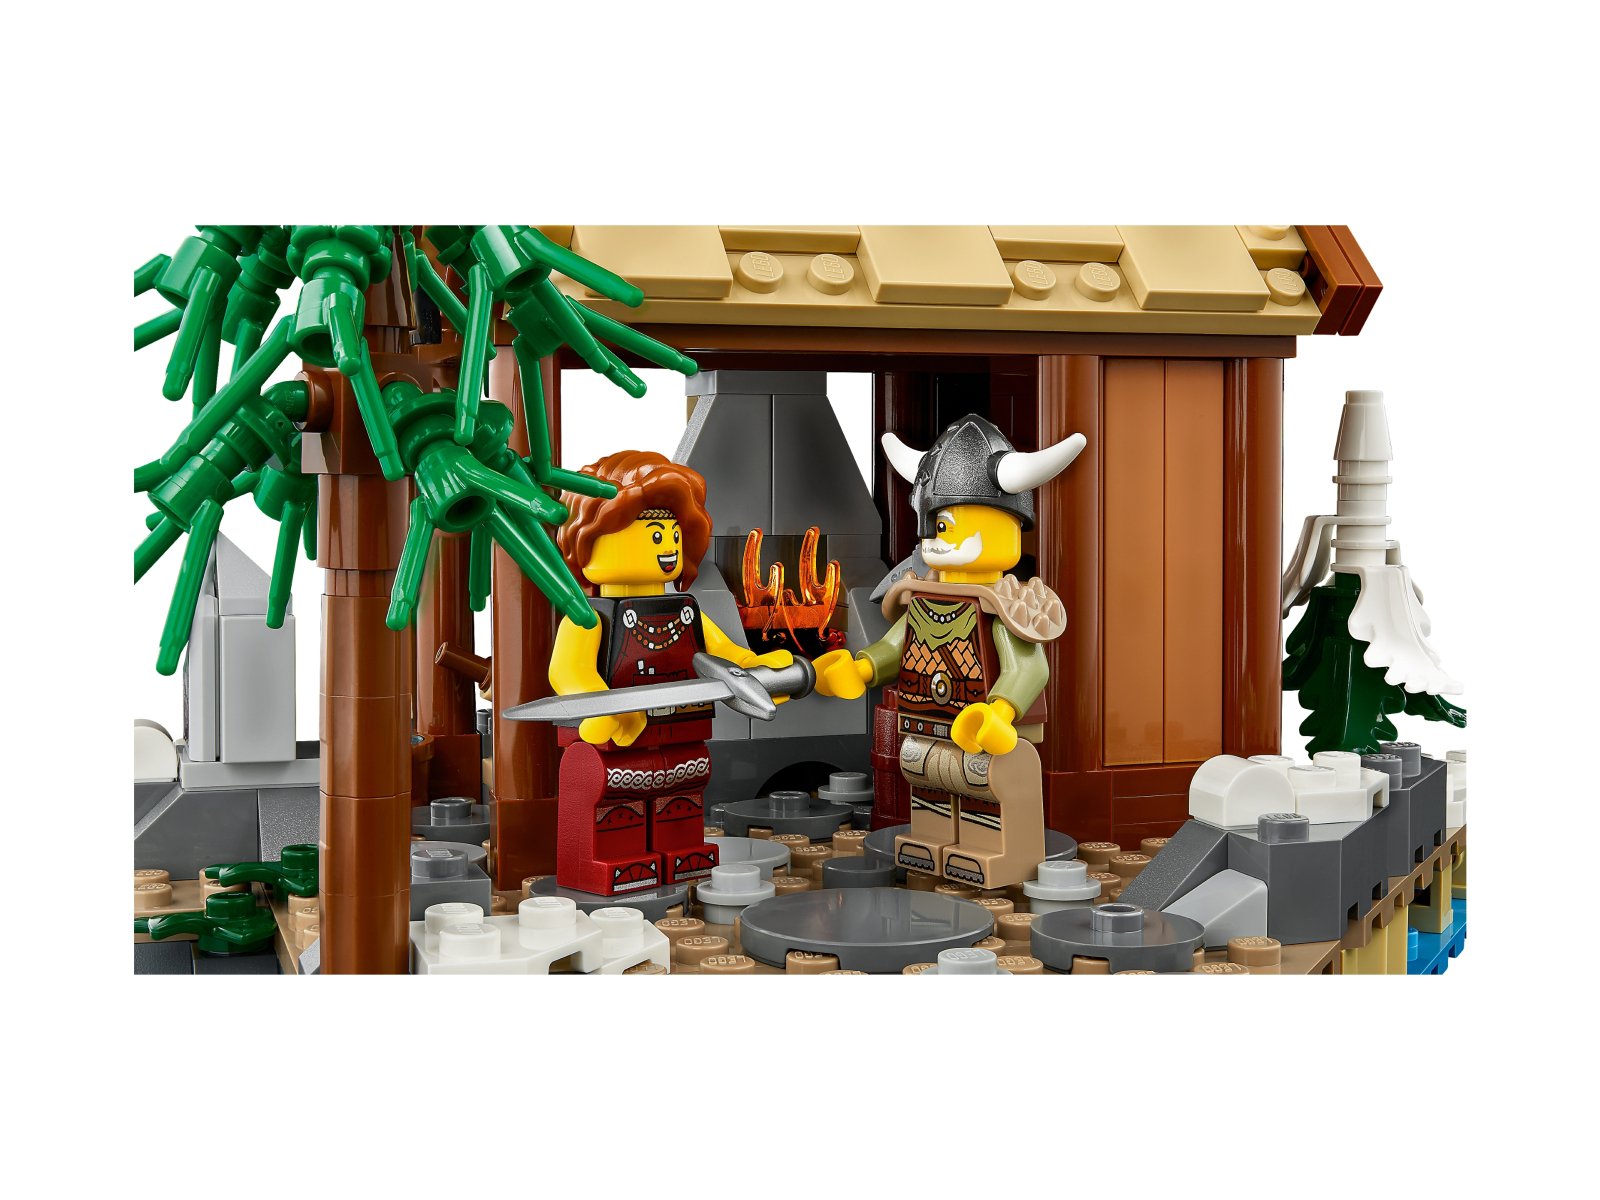 LEGO 21343 Wioska Wikingów